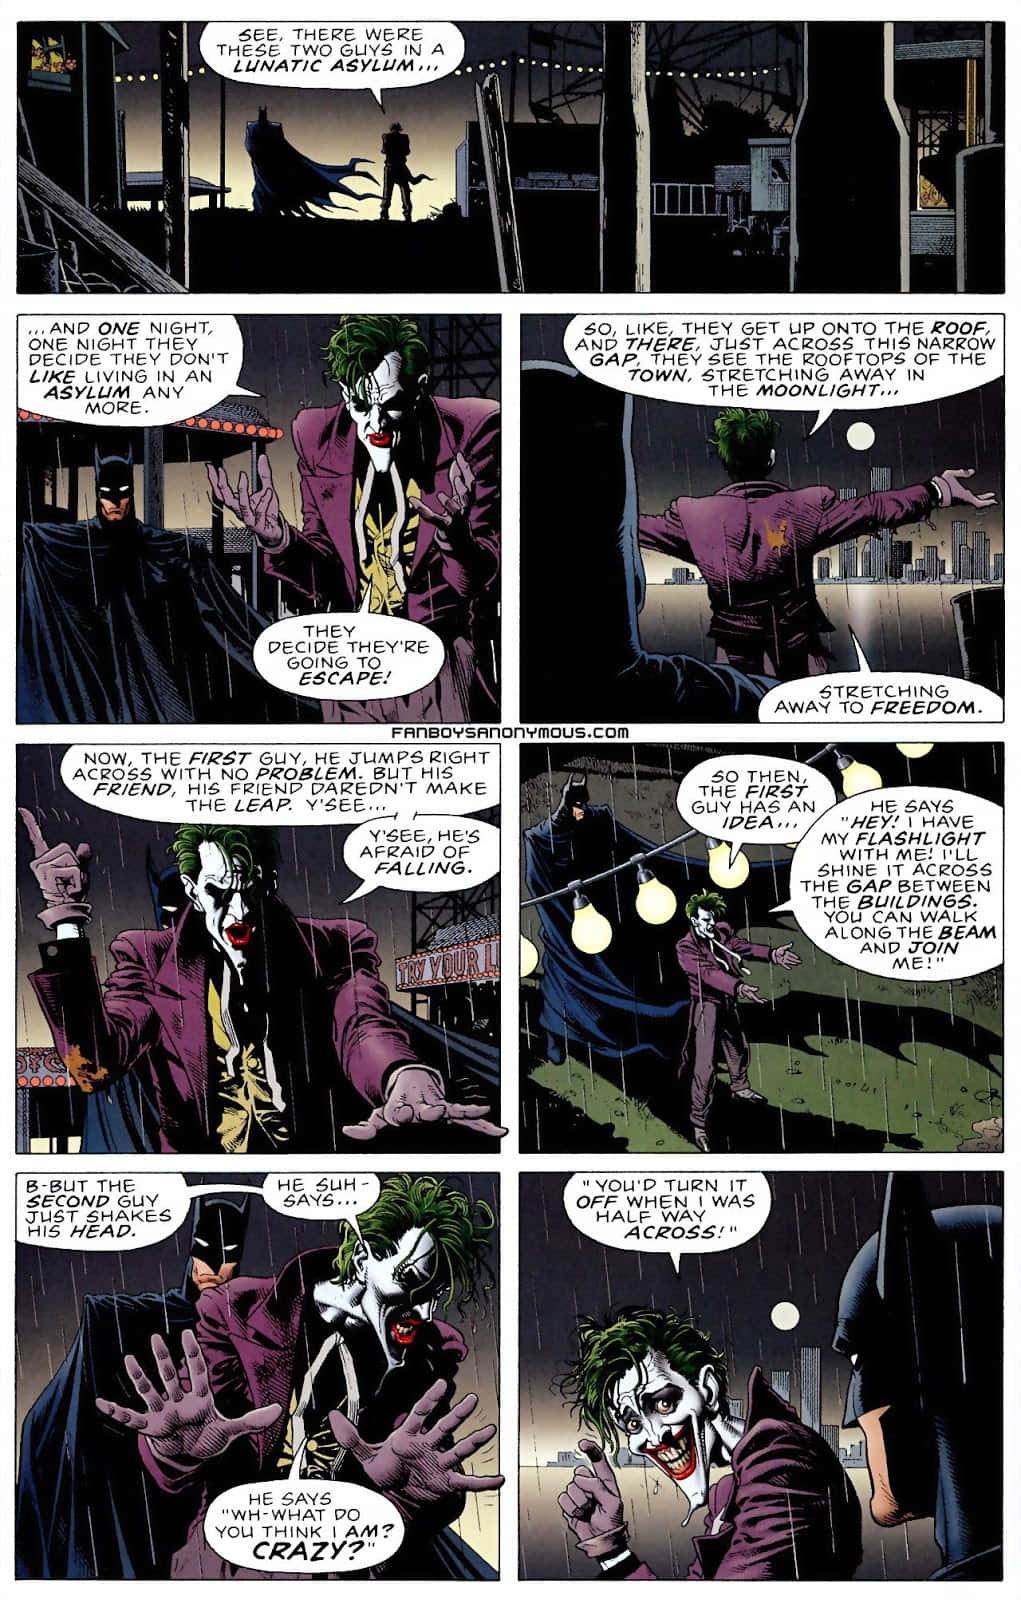 The Joker in The Killing Joke Graphic Novel Wallpaper